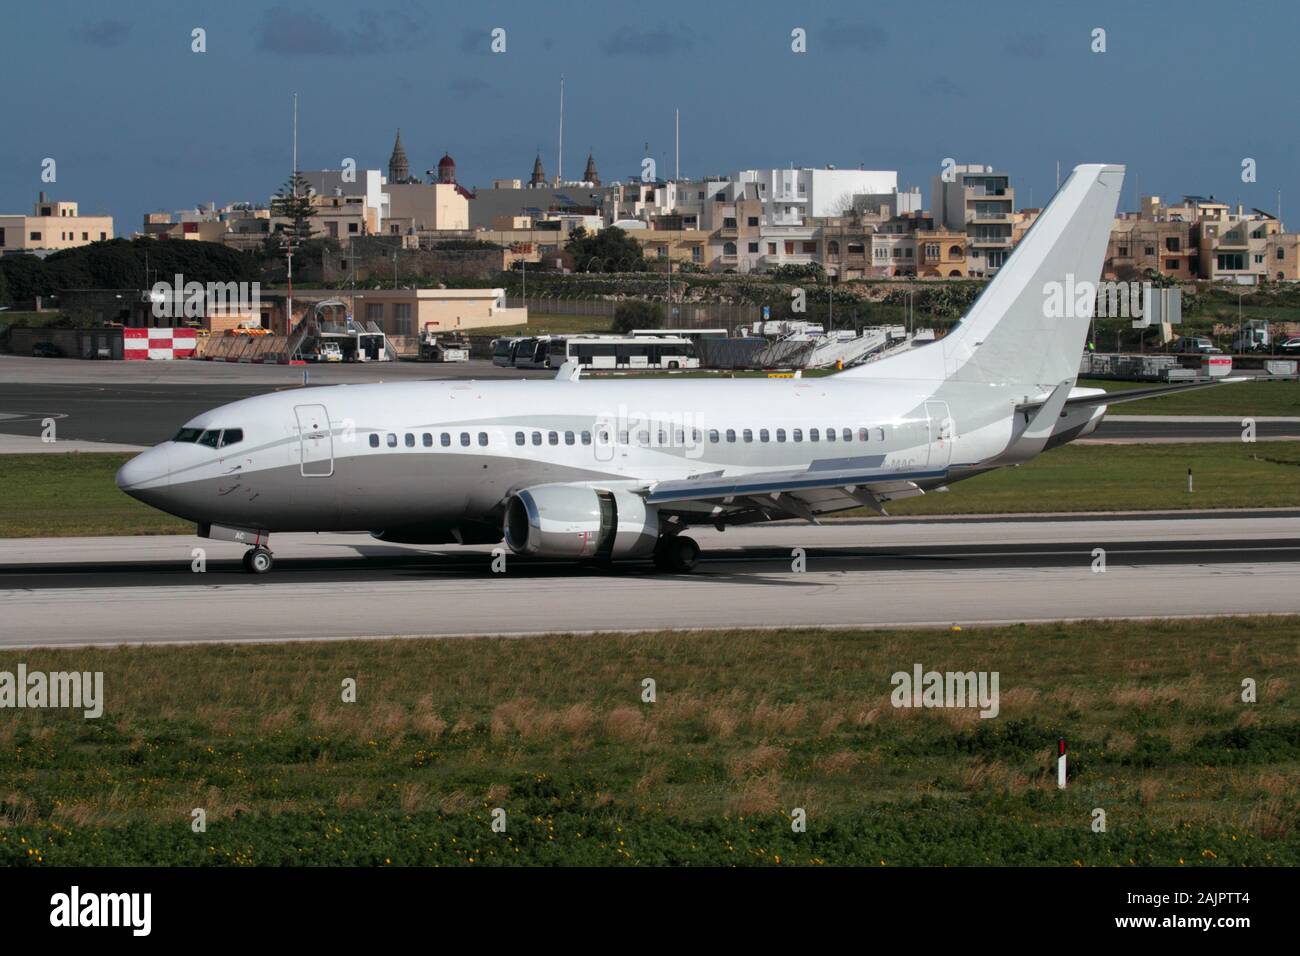 Avión Boeing 737-500 de pasajeros perteneciente a la empresa fletadora basada en Malta Maleth Aero a la llegada en destino en Malta Foto de stock